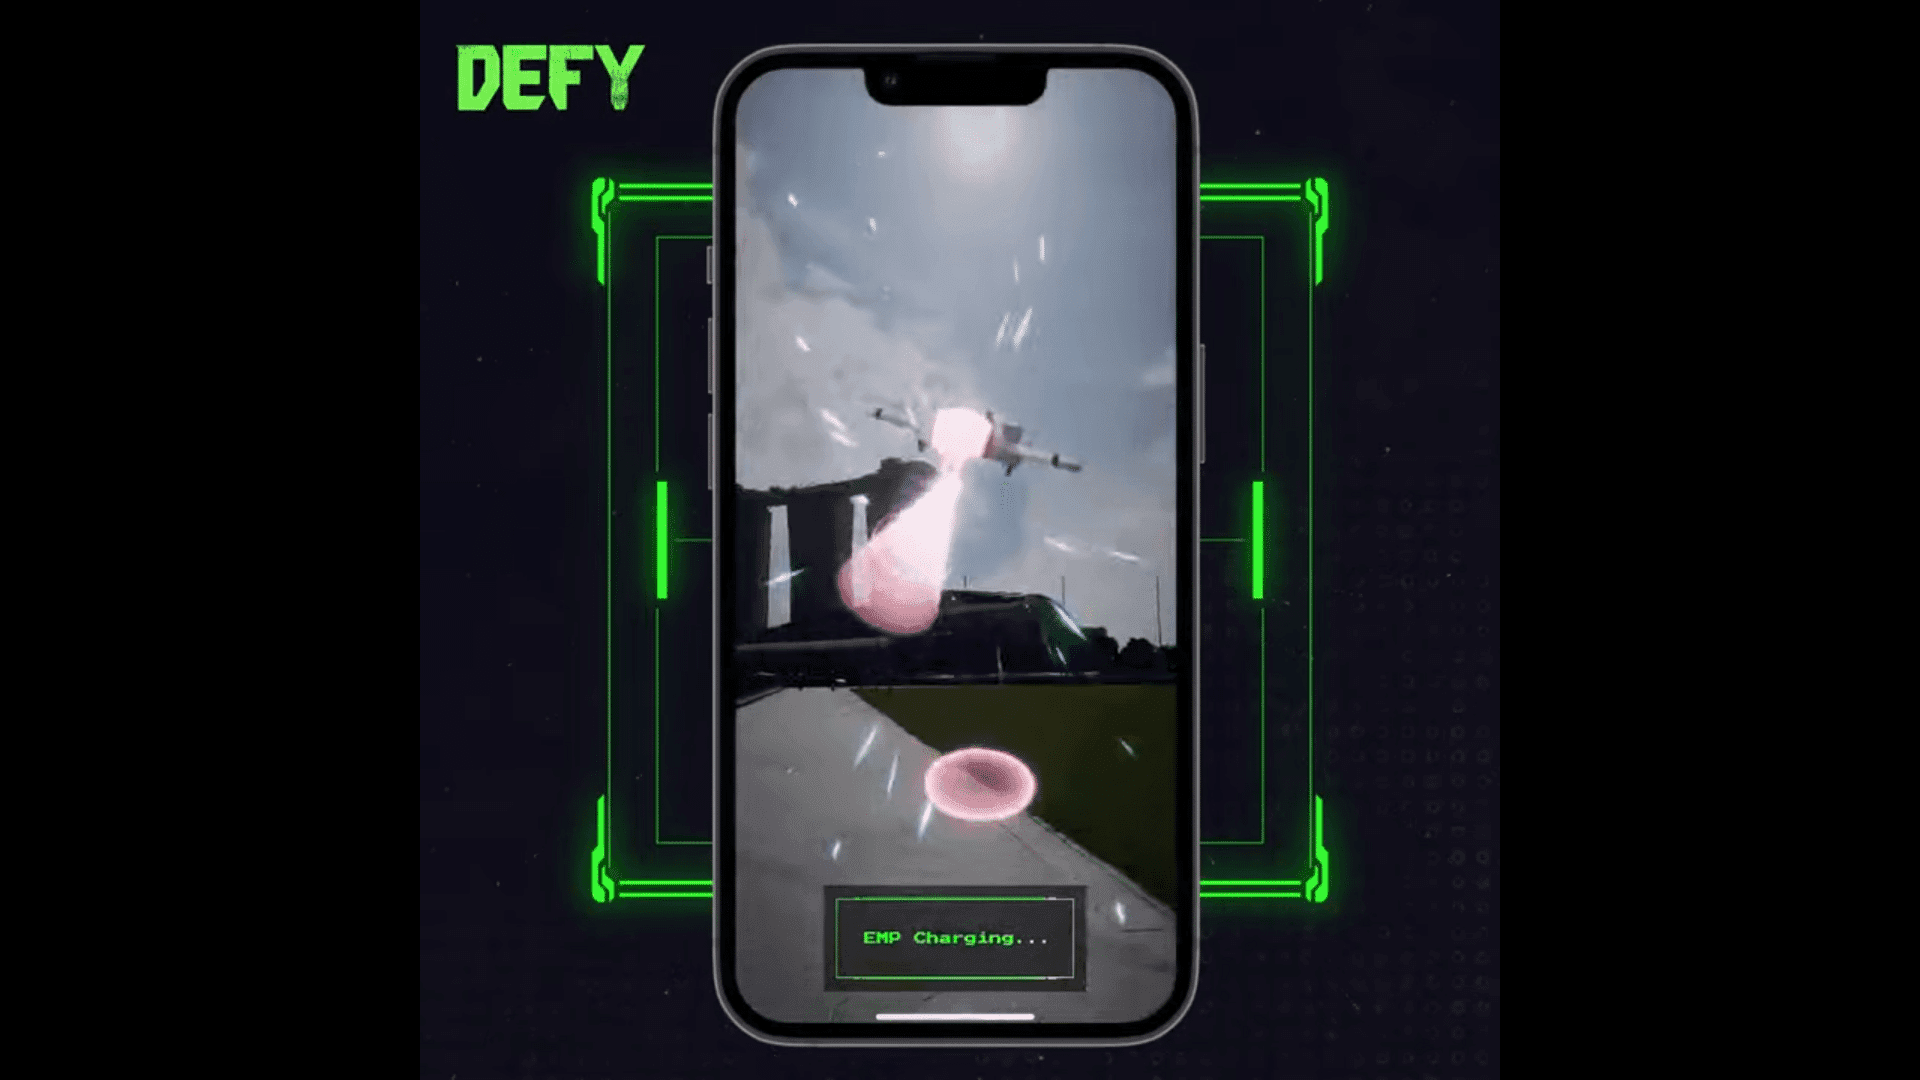 DEFY es un juego móvil de movimiento para ganar que combina elementos de los mundos virtual y físico para brindar una experiencia inmersiva de metaverso.